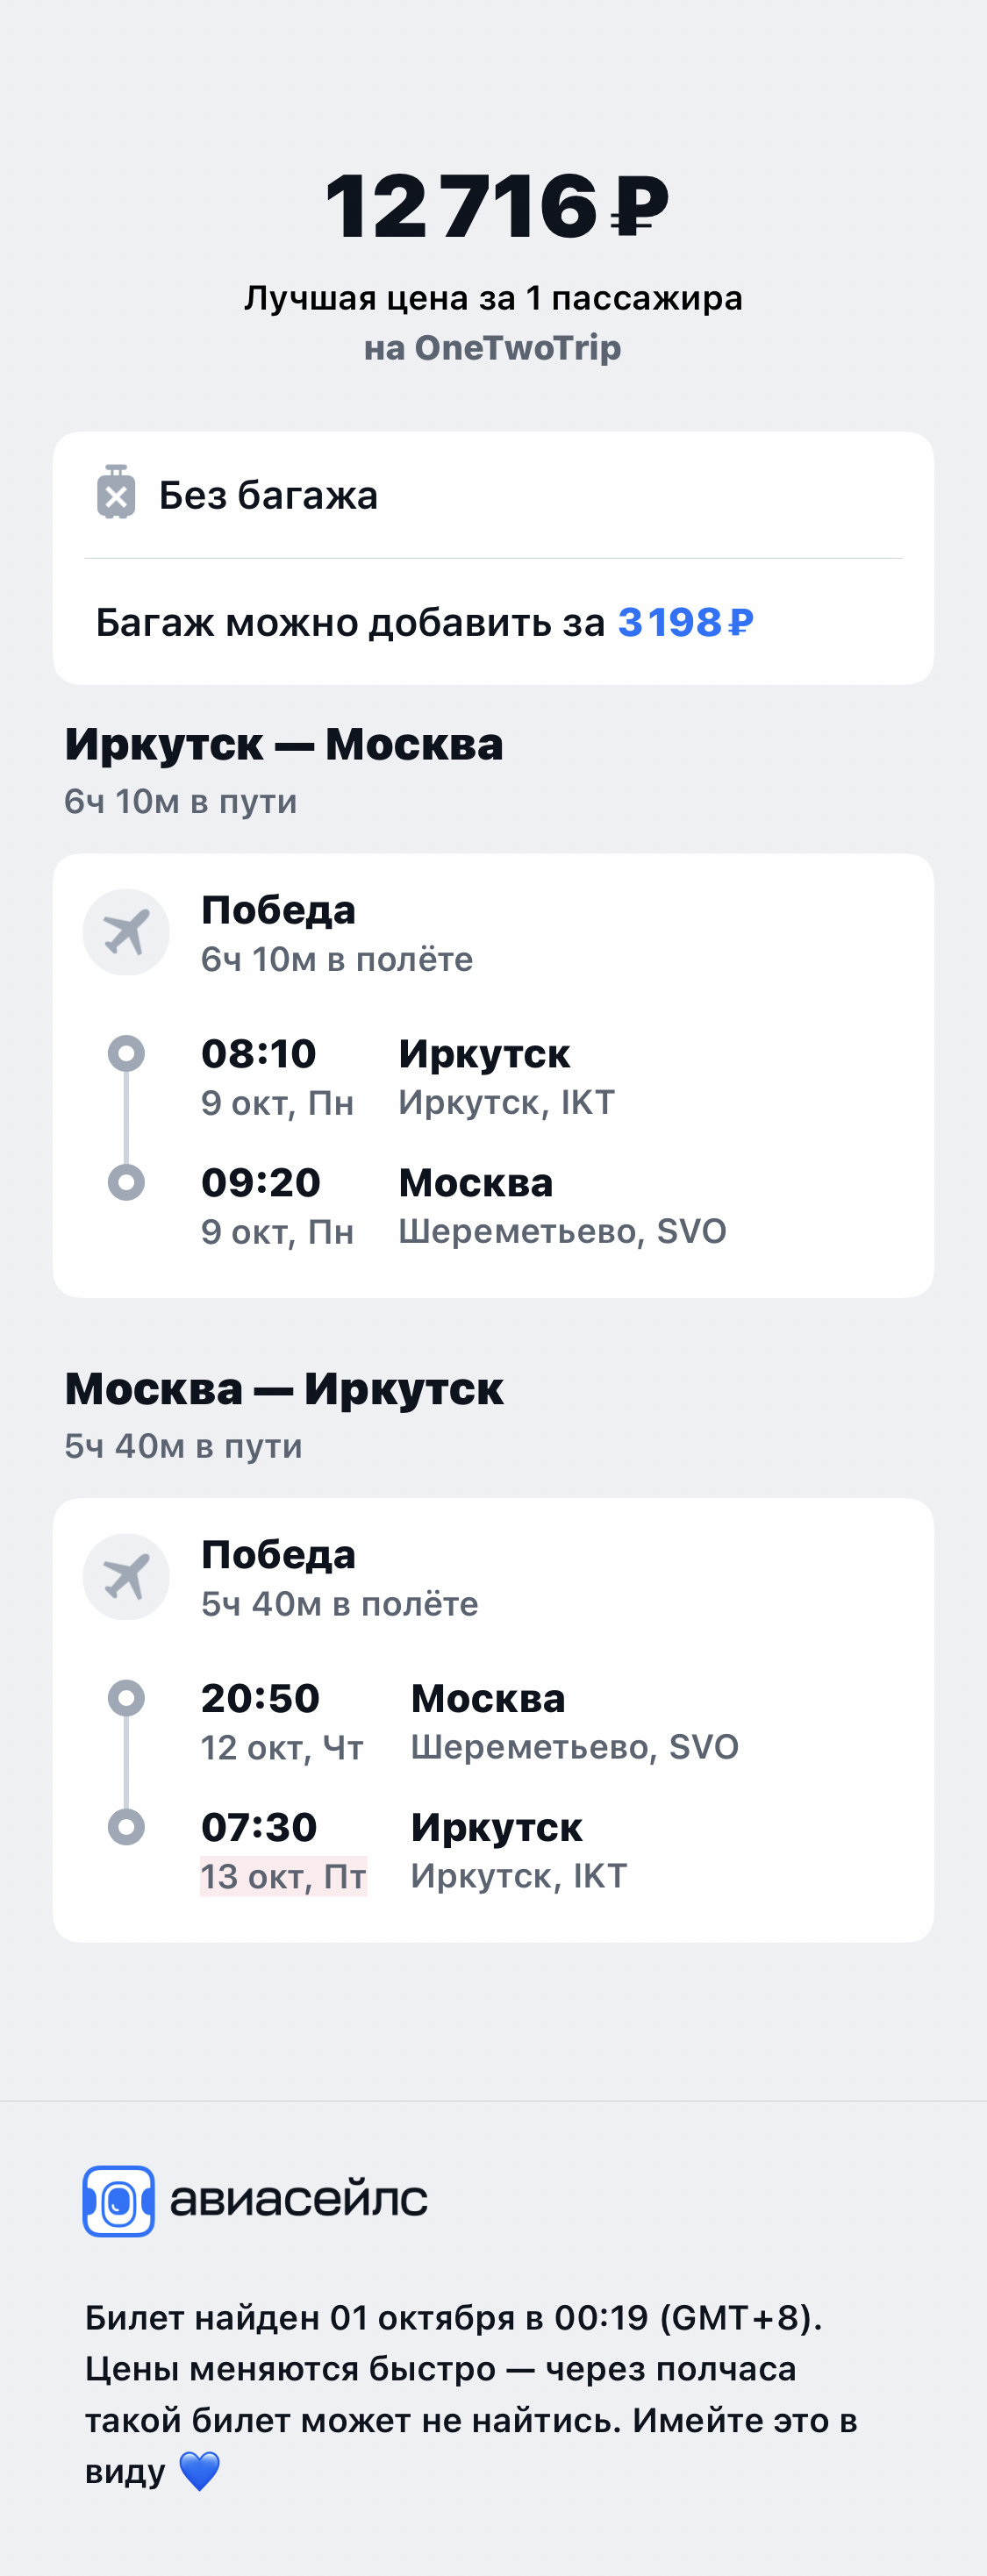 Я мечтаю полететь в Москву.